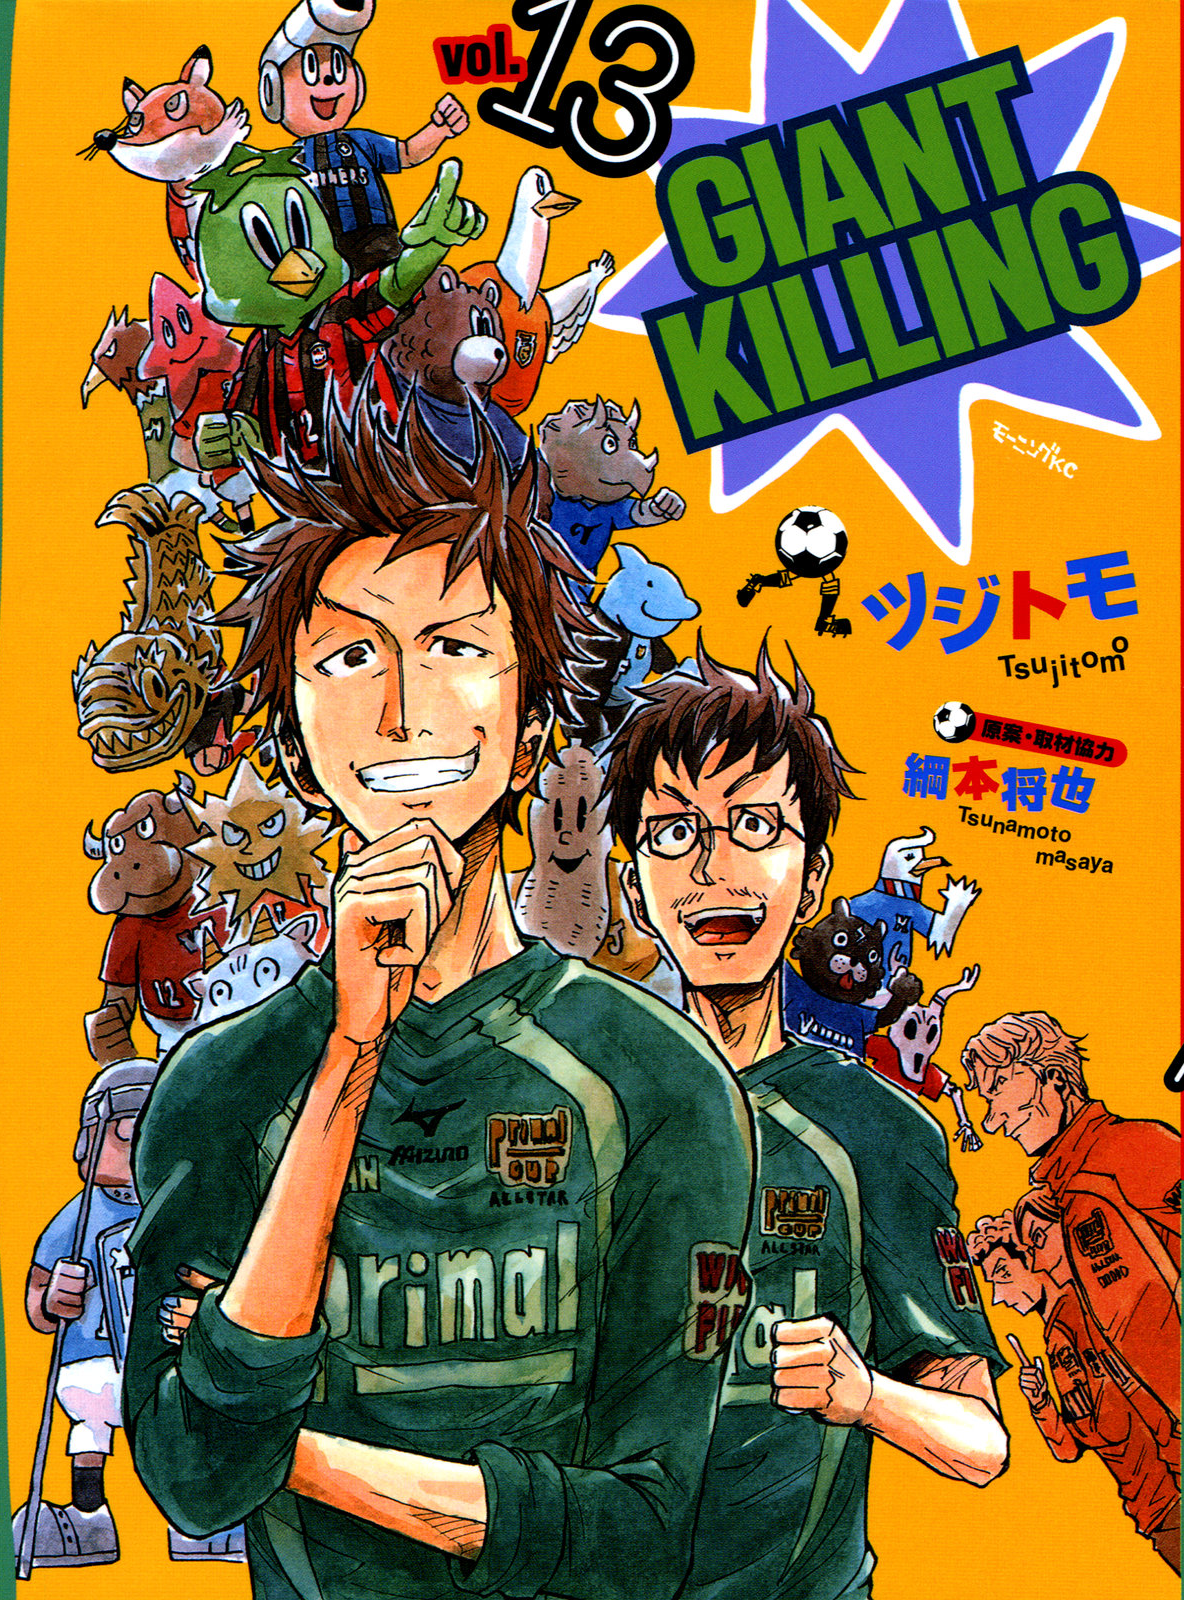 Giant Killing (Manga) - TV Tropes